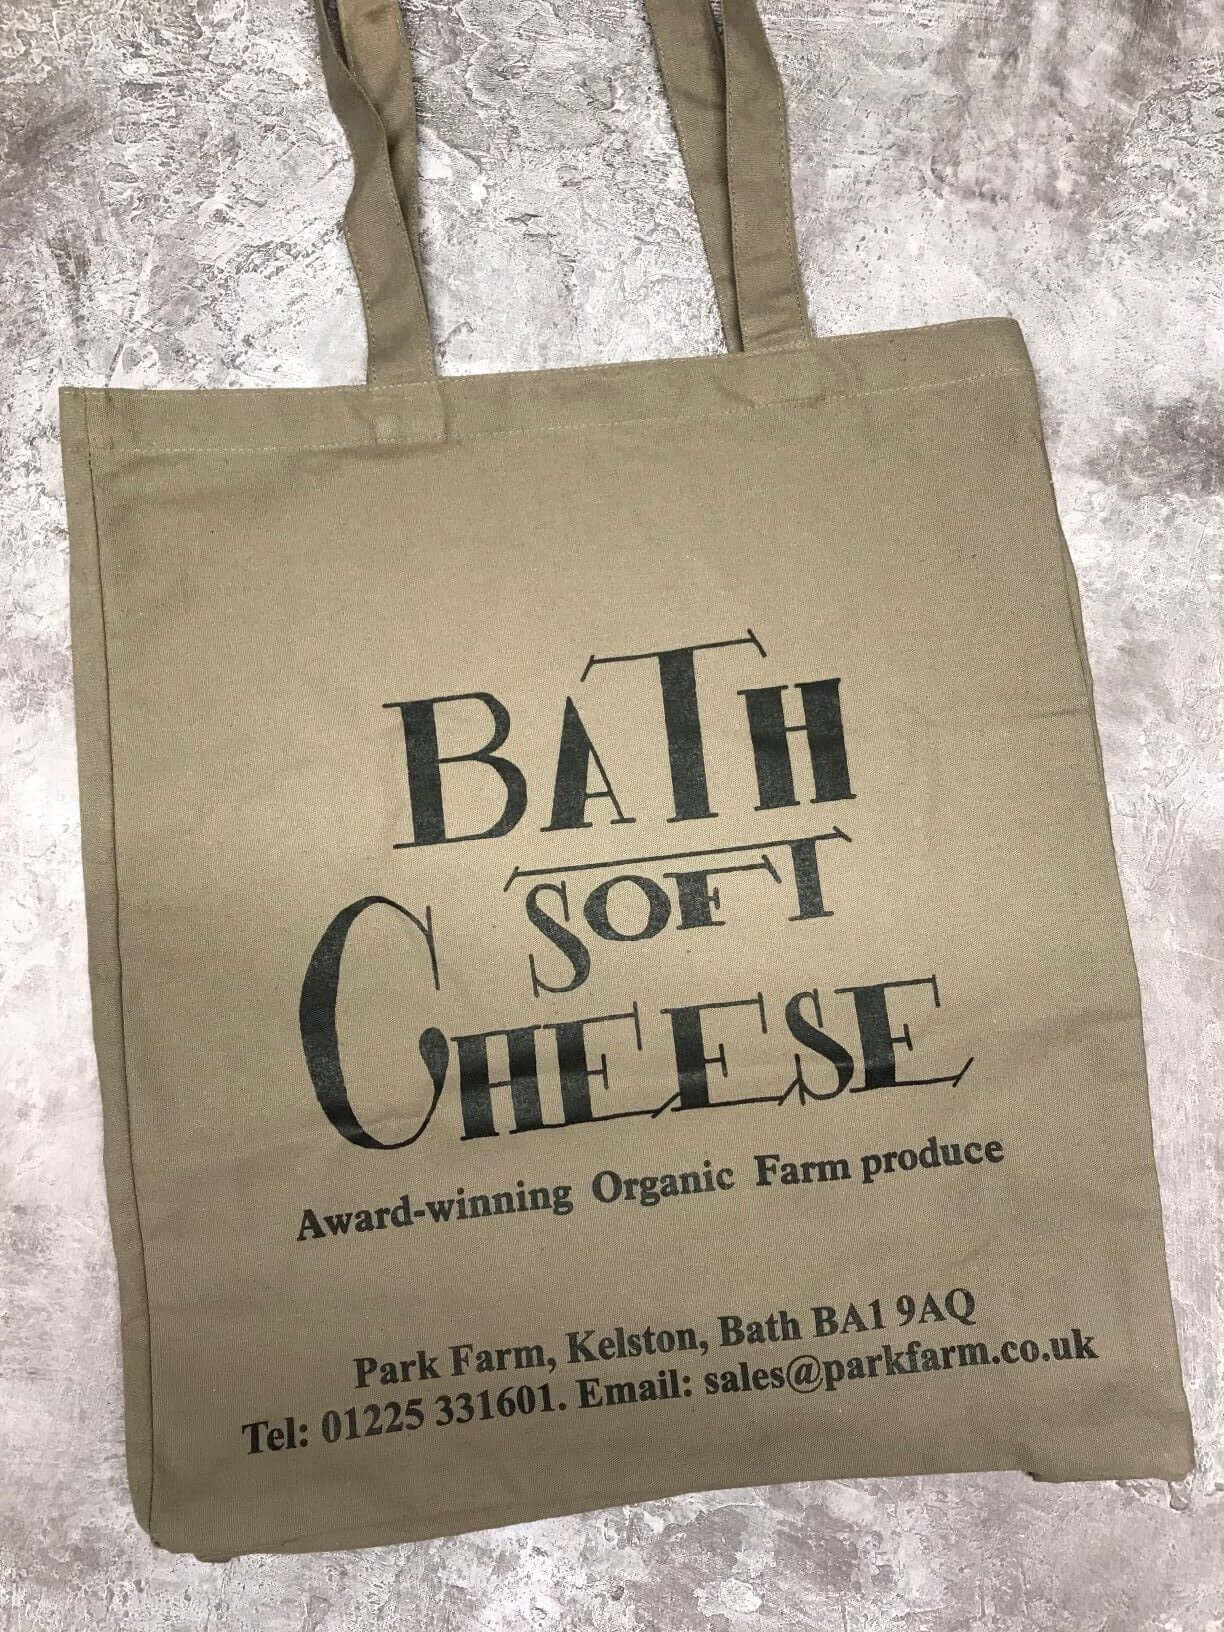 Bath Soft Cheese Tote Shopping Bag